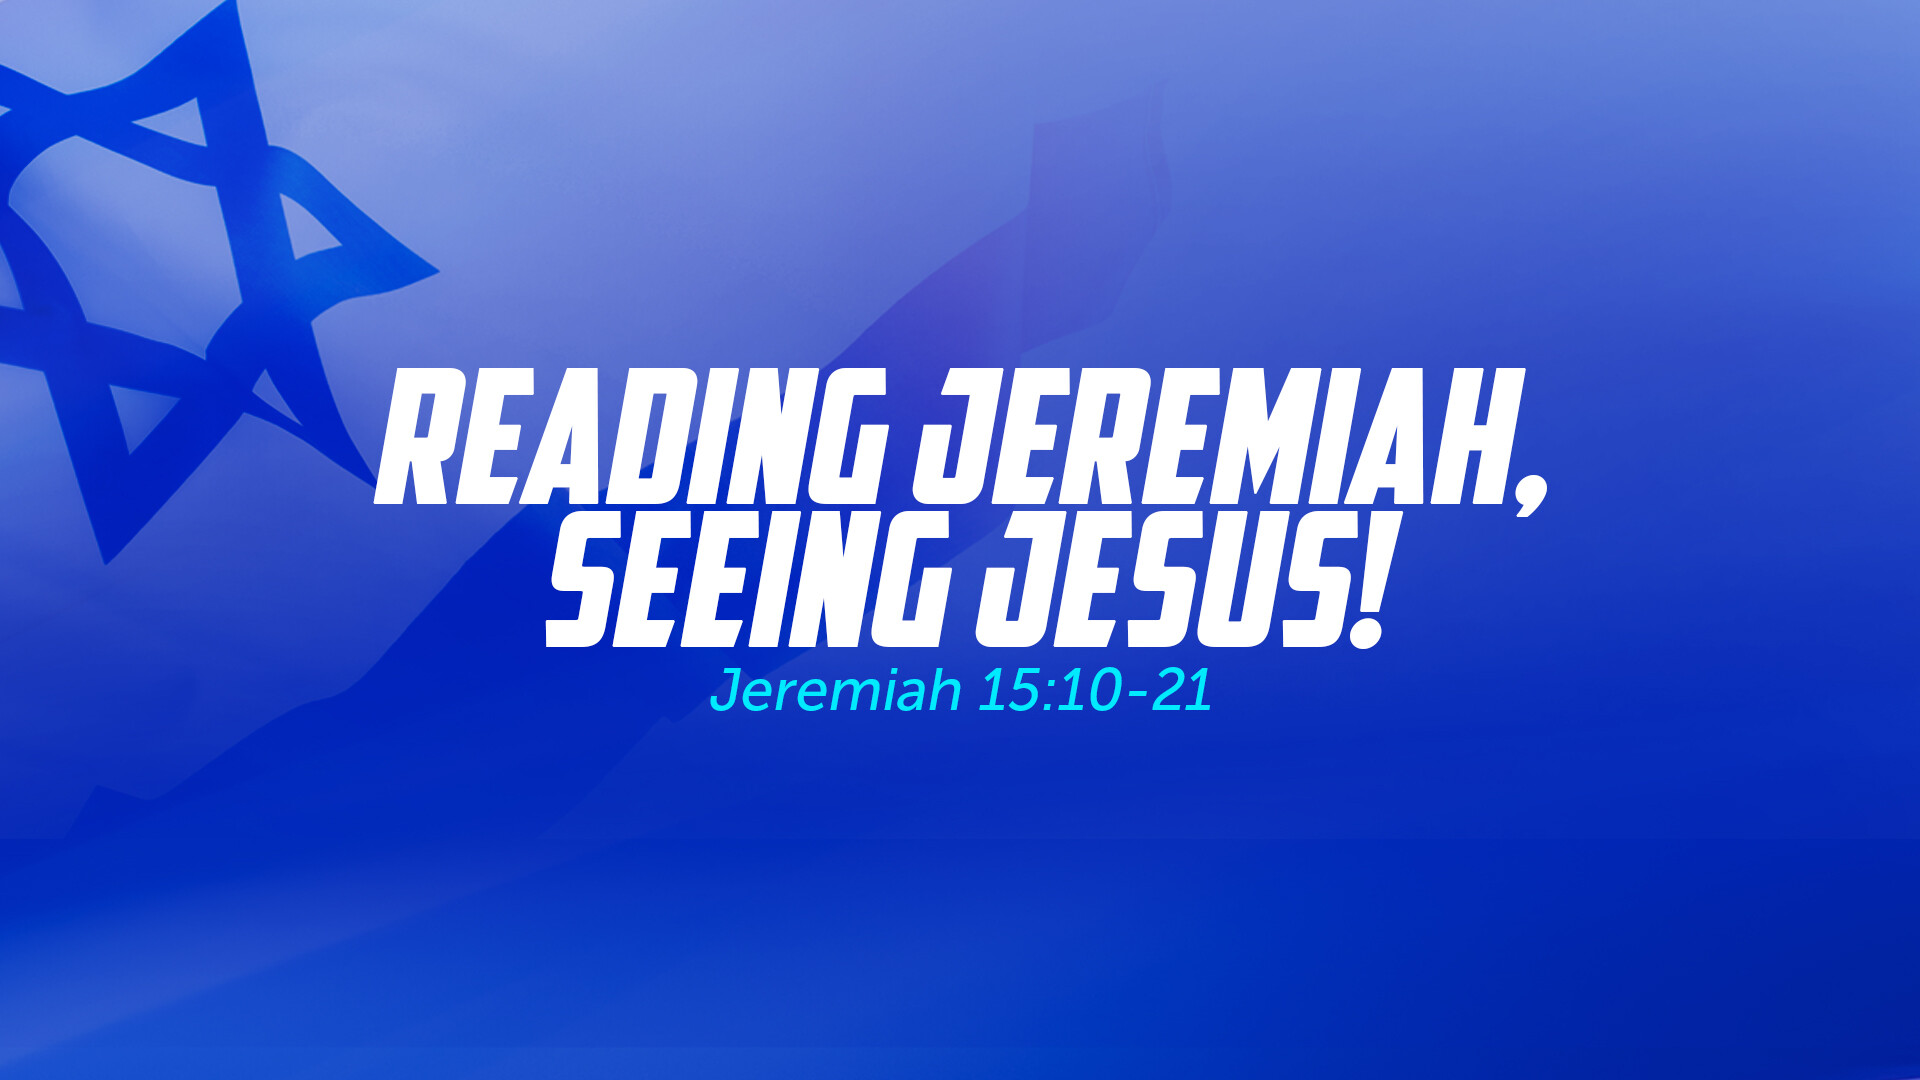 Reading Jeremiah, Seeing Jesus!